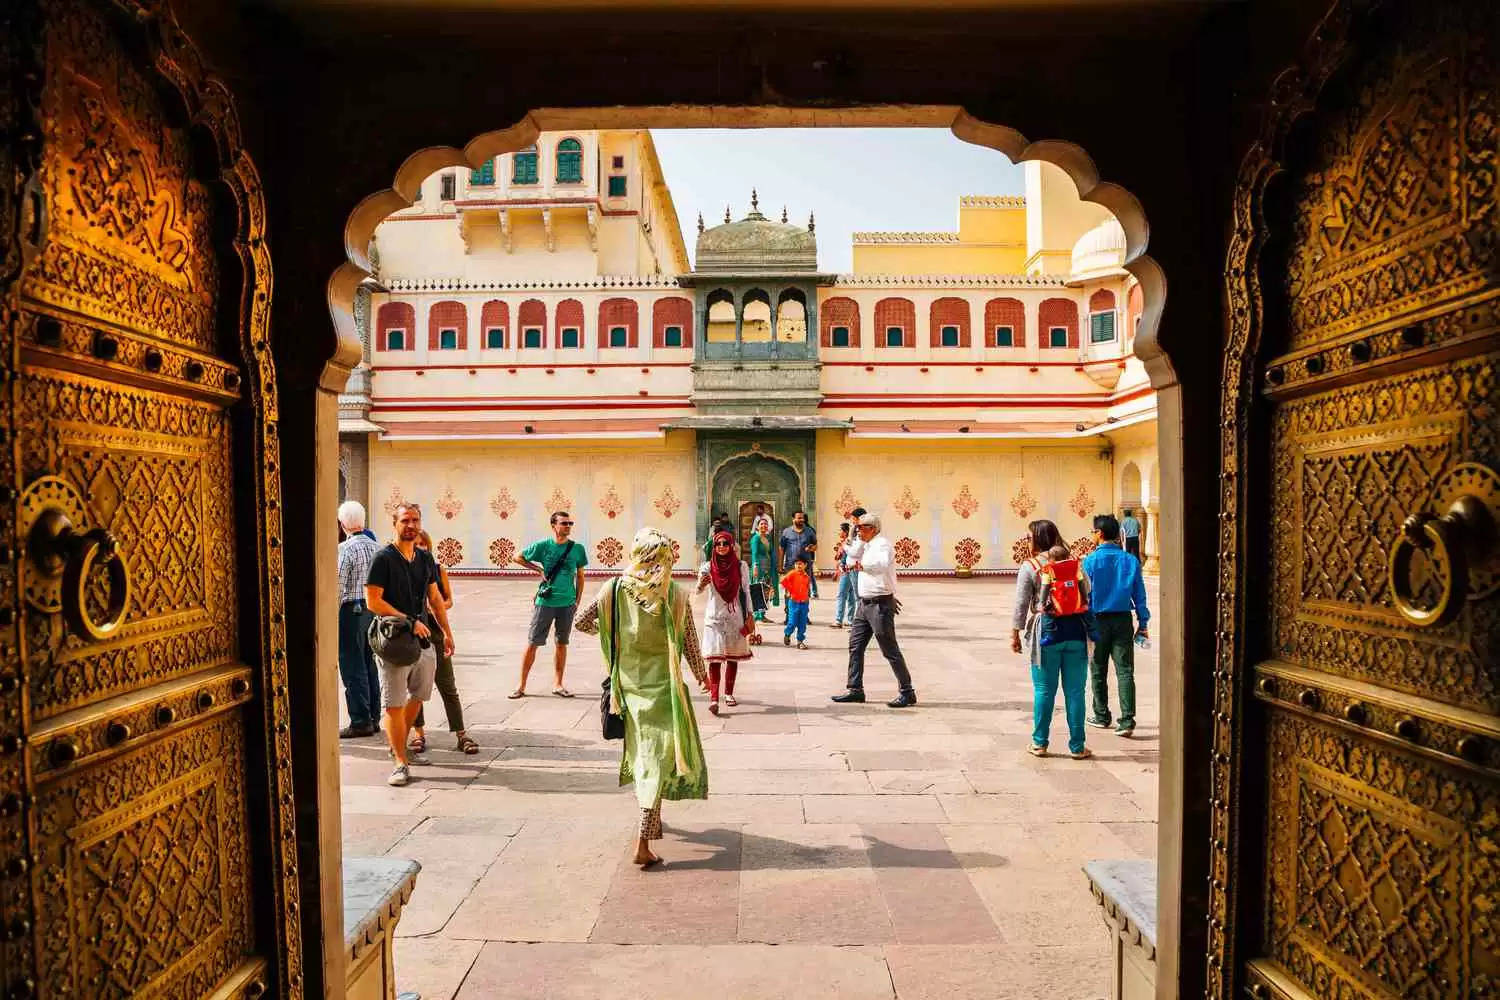 जयपुर के सिटी पैलेस में मौजूद हैं दुनिया का सबसे बड़ा चांदी का कलश, इस वायरल वीडियो में देखें इस गंगाजली घड़े की कहानी